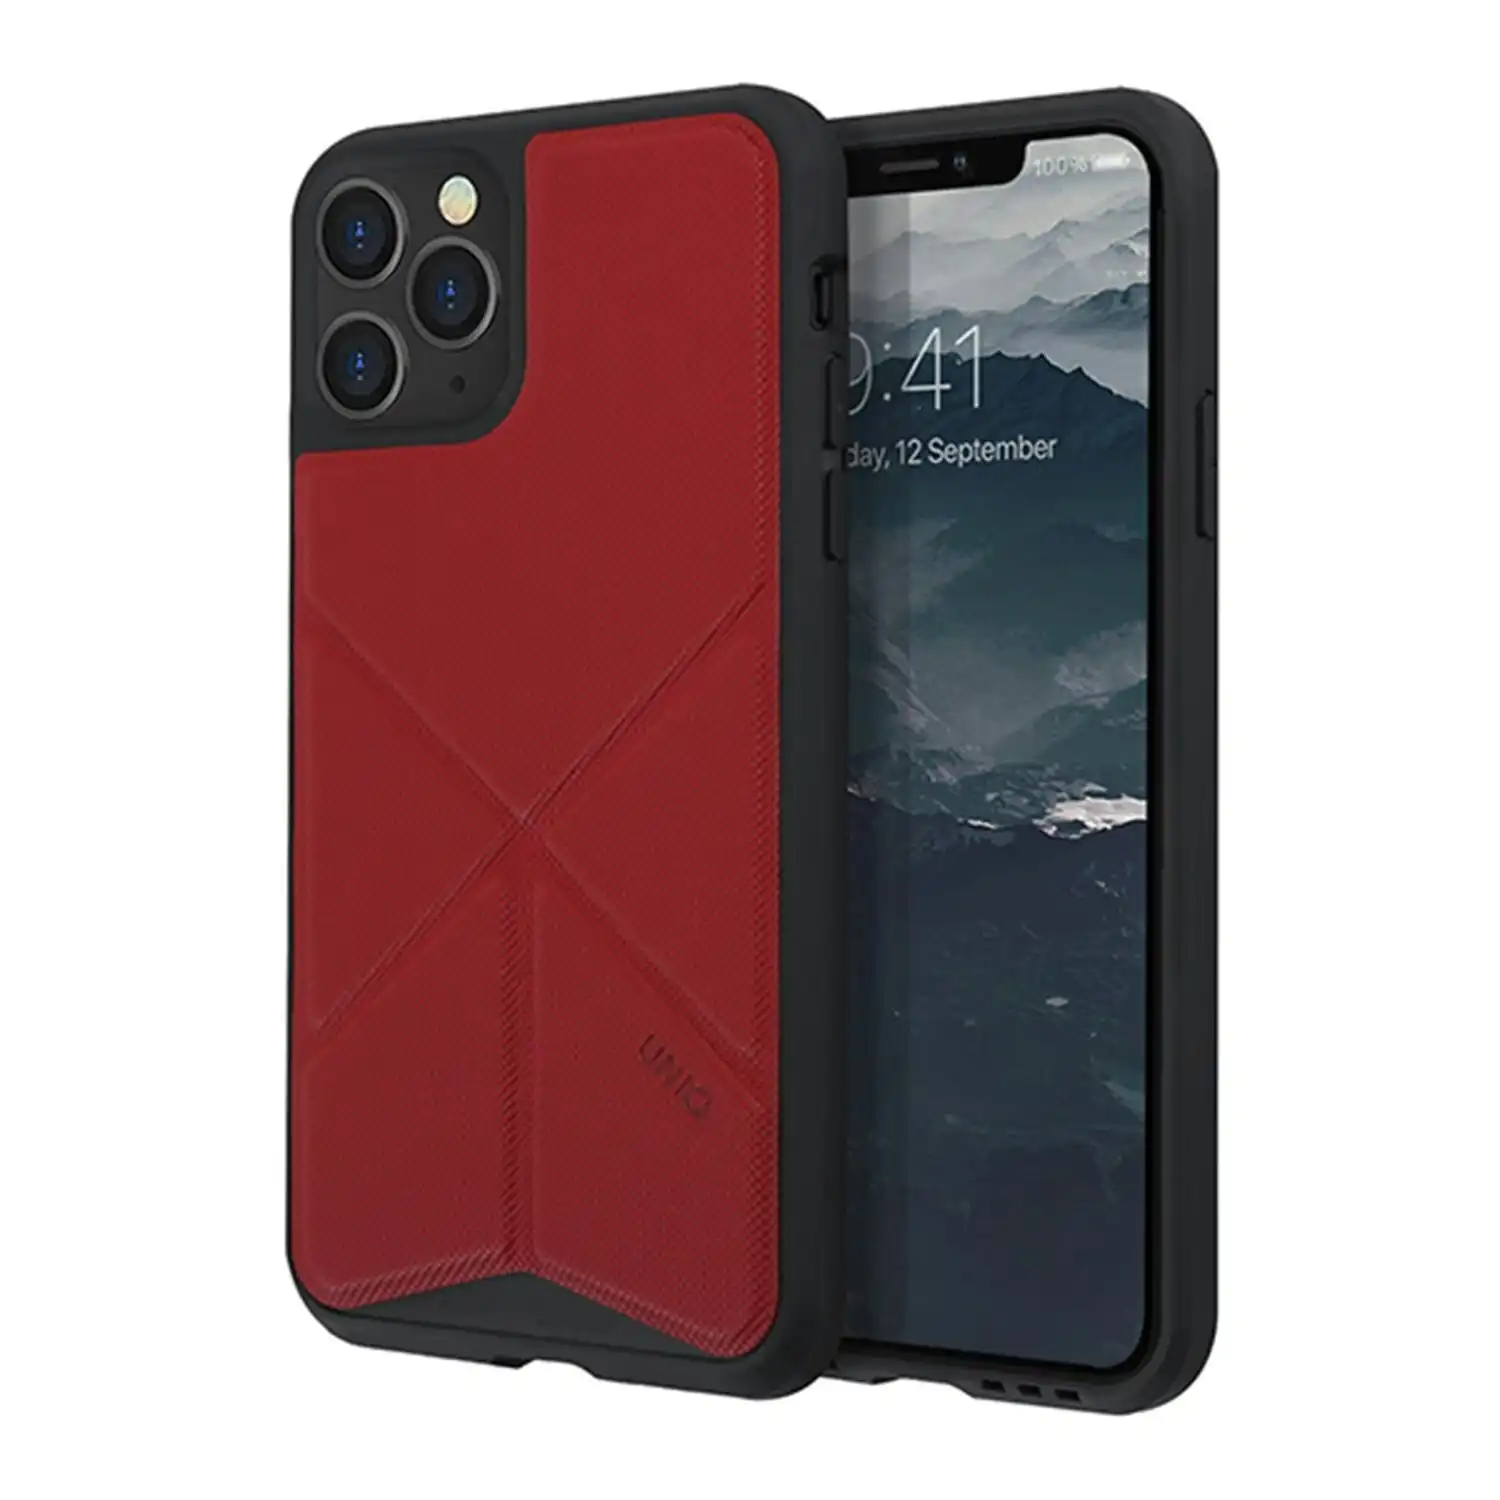 Uniq Transforma Bumper Protection Mobile Case Cover For Apple iPhone 11 Pro Red